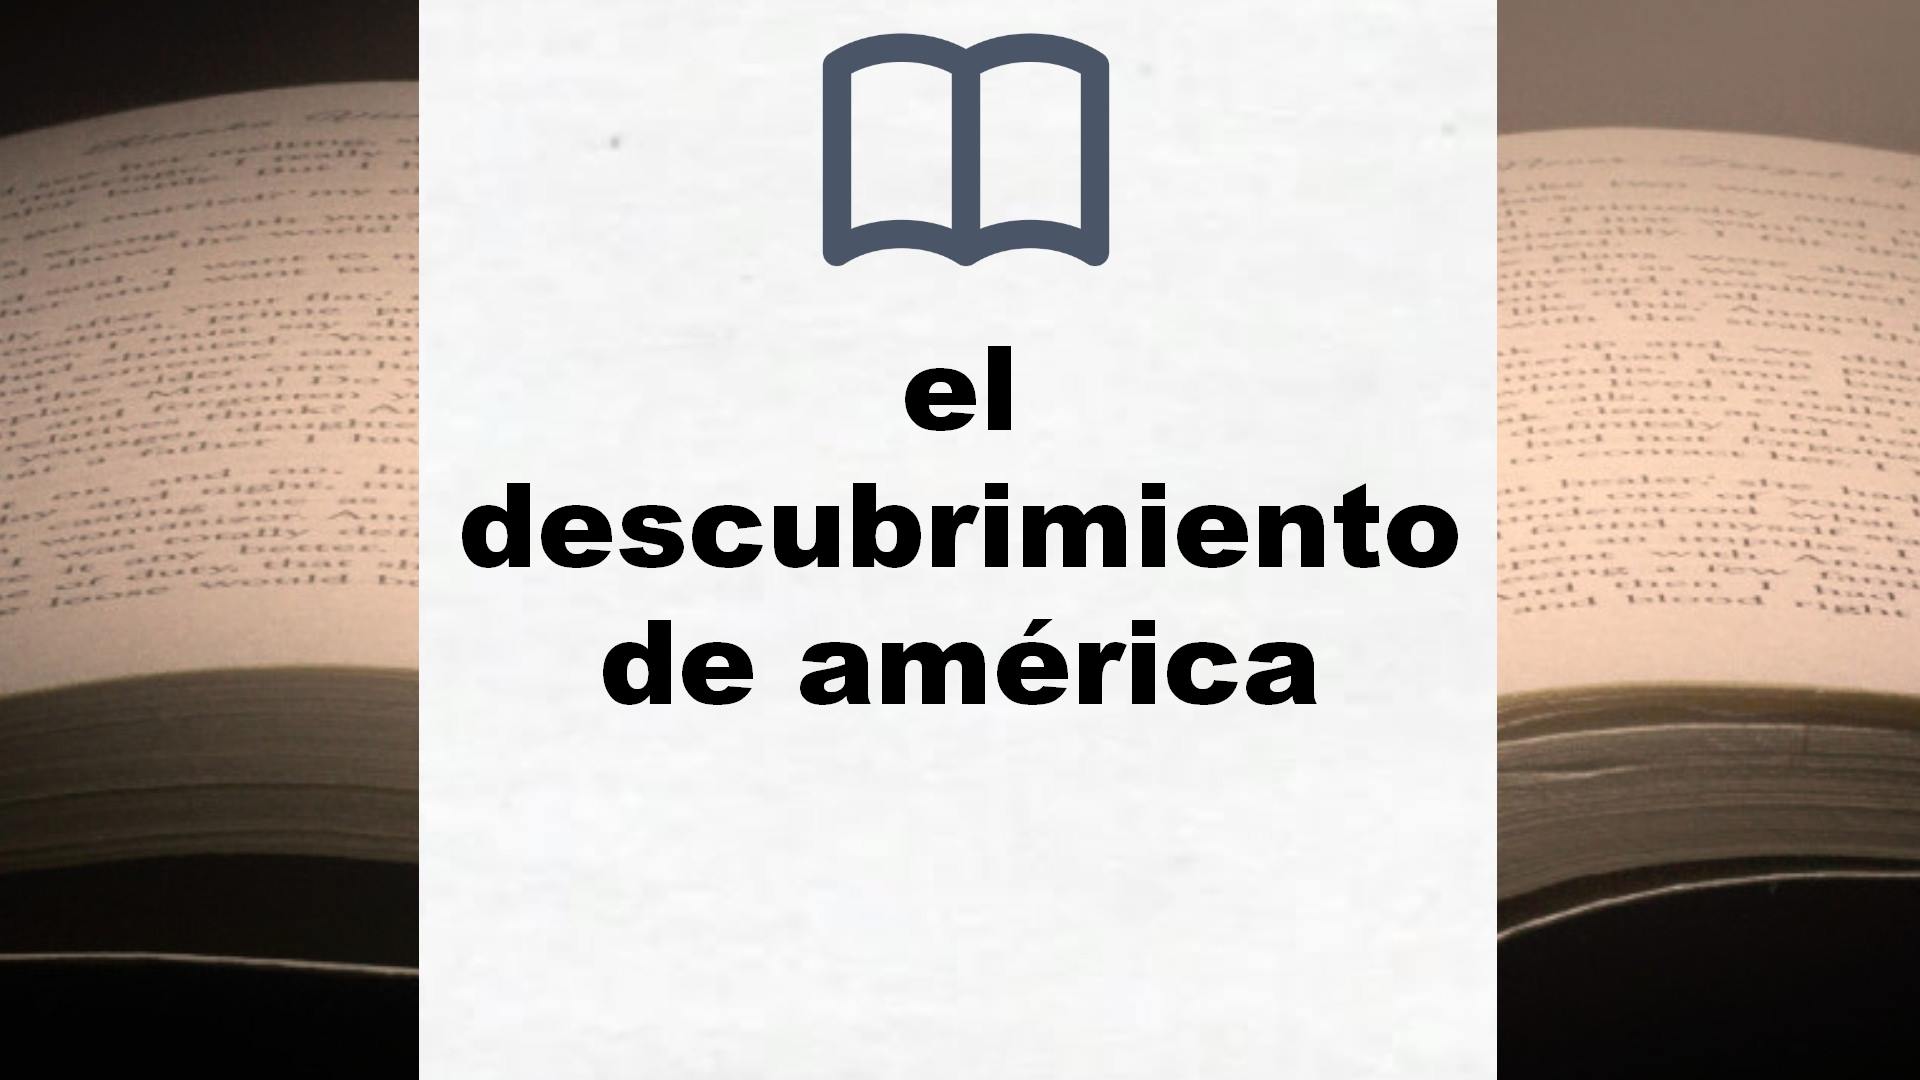 Libros sobre el descubrimiento de américa